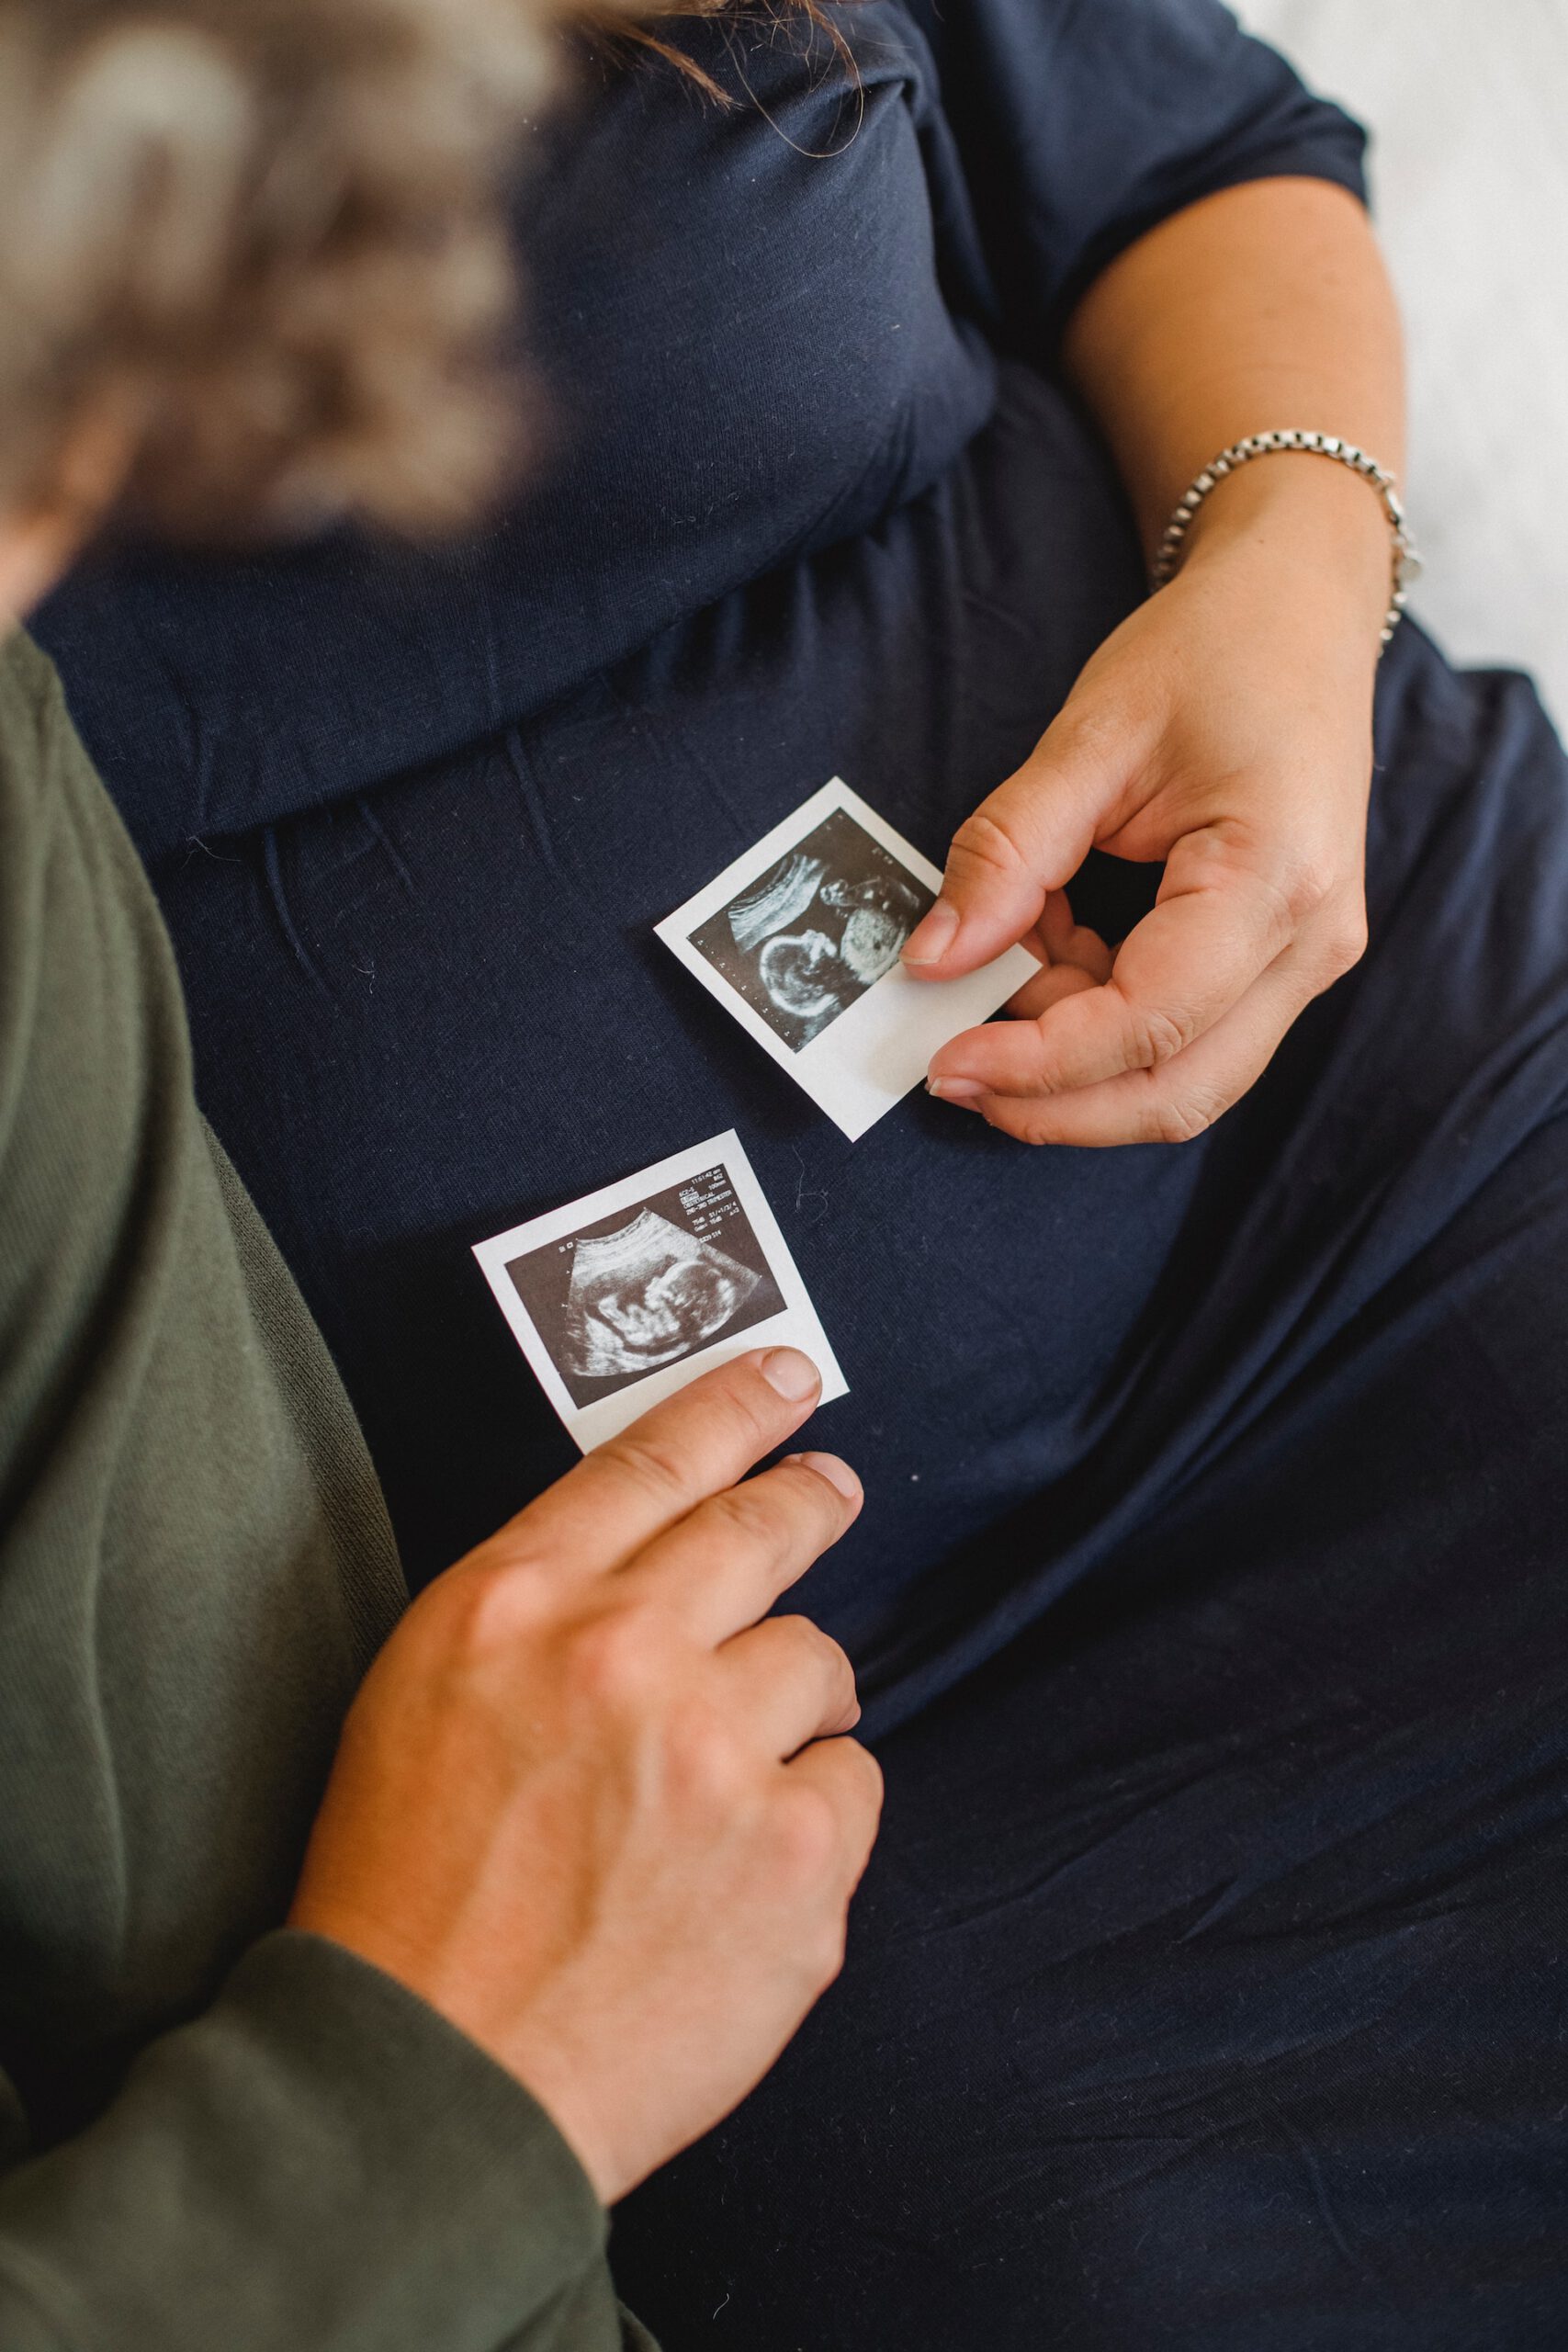 Blijf op de hoogte van de ontwikkeling van je baby tijdens de zwangerschap met updates van BabyOpkomst.nl!